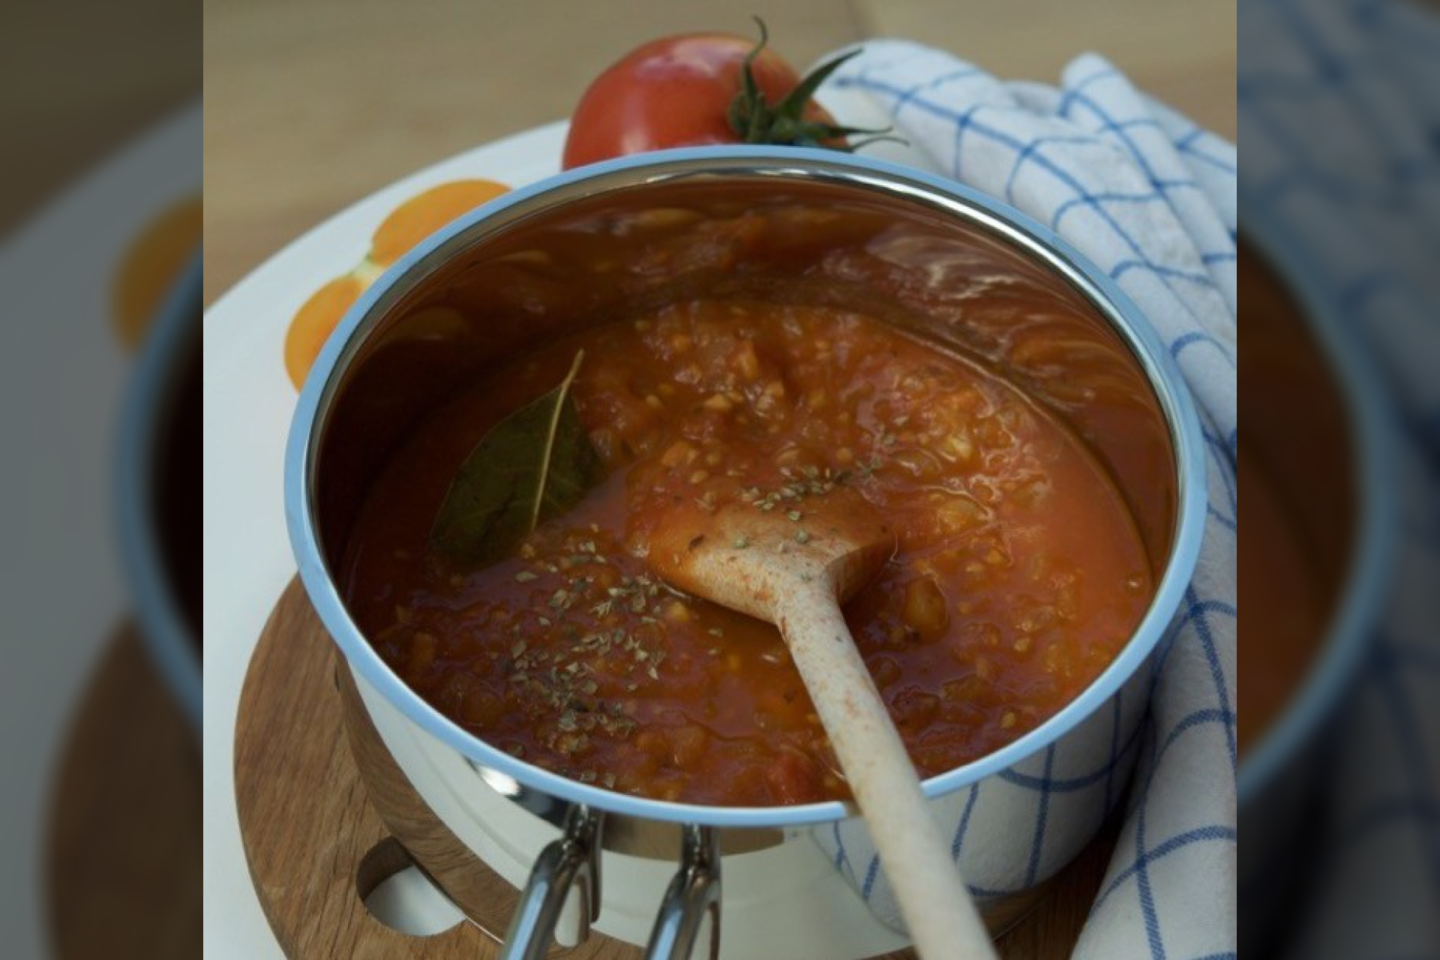  Pomidorų padažas.<br>Nuotr. iš „Duok druskos“.